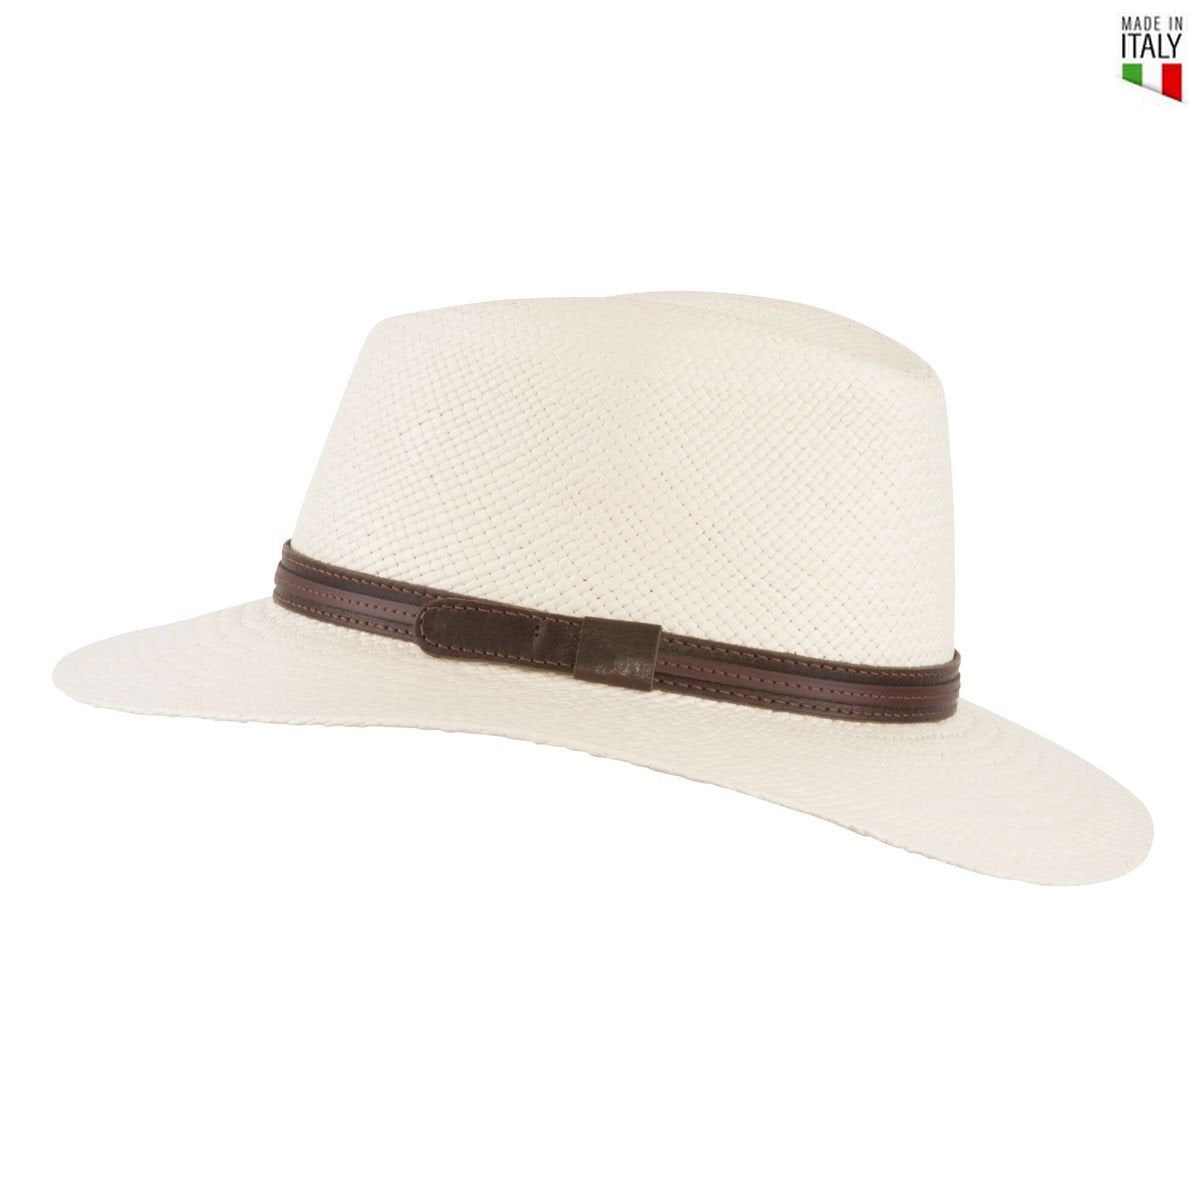 MJM Dude Panama Hat - Natur - Hat fra MJM Hats hos The Prince Webshop